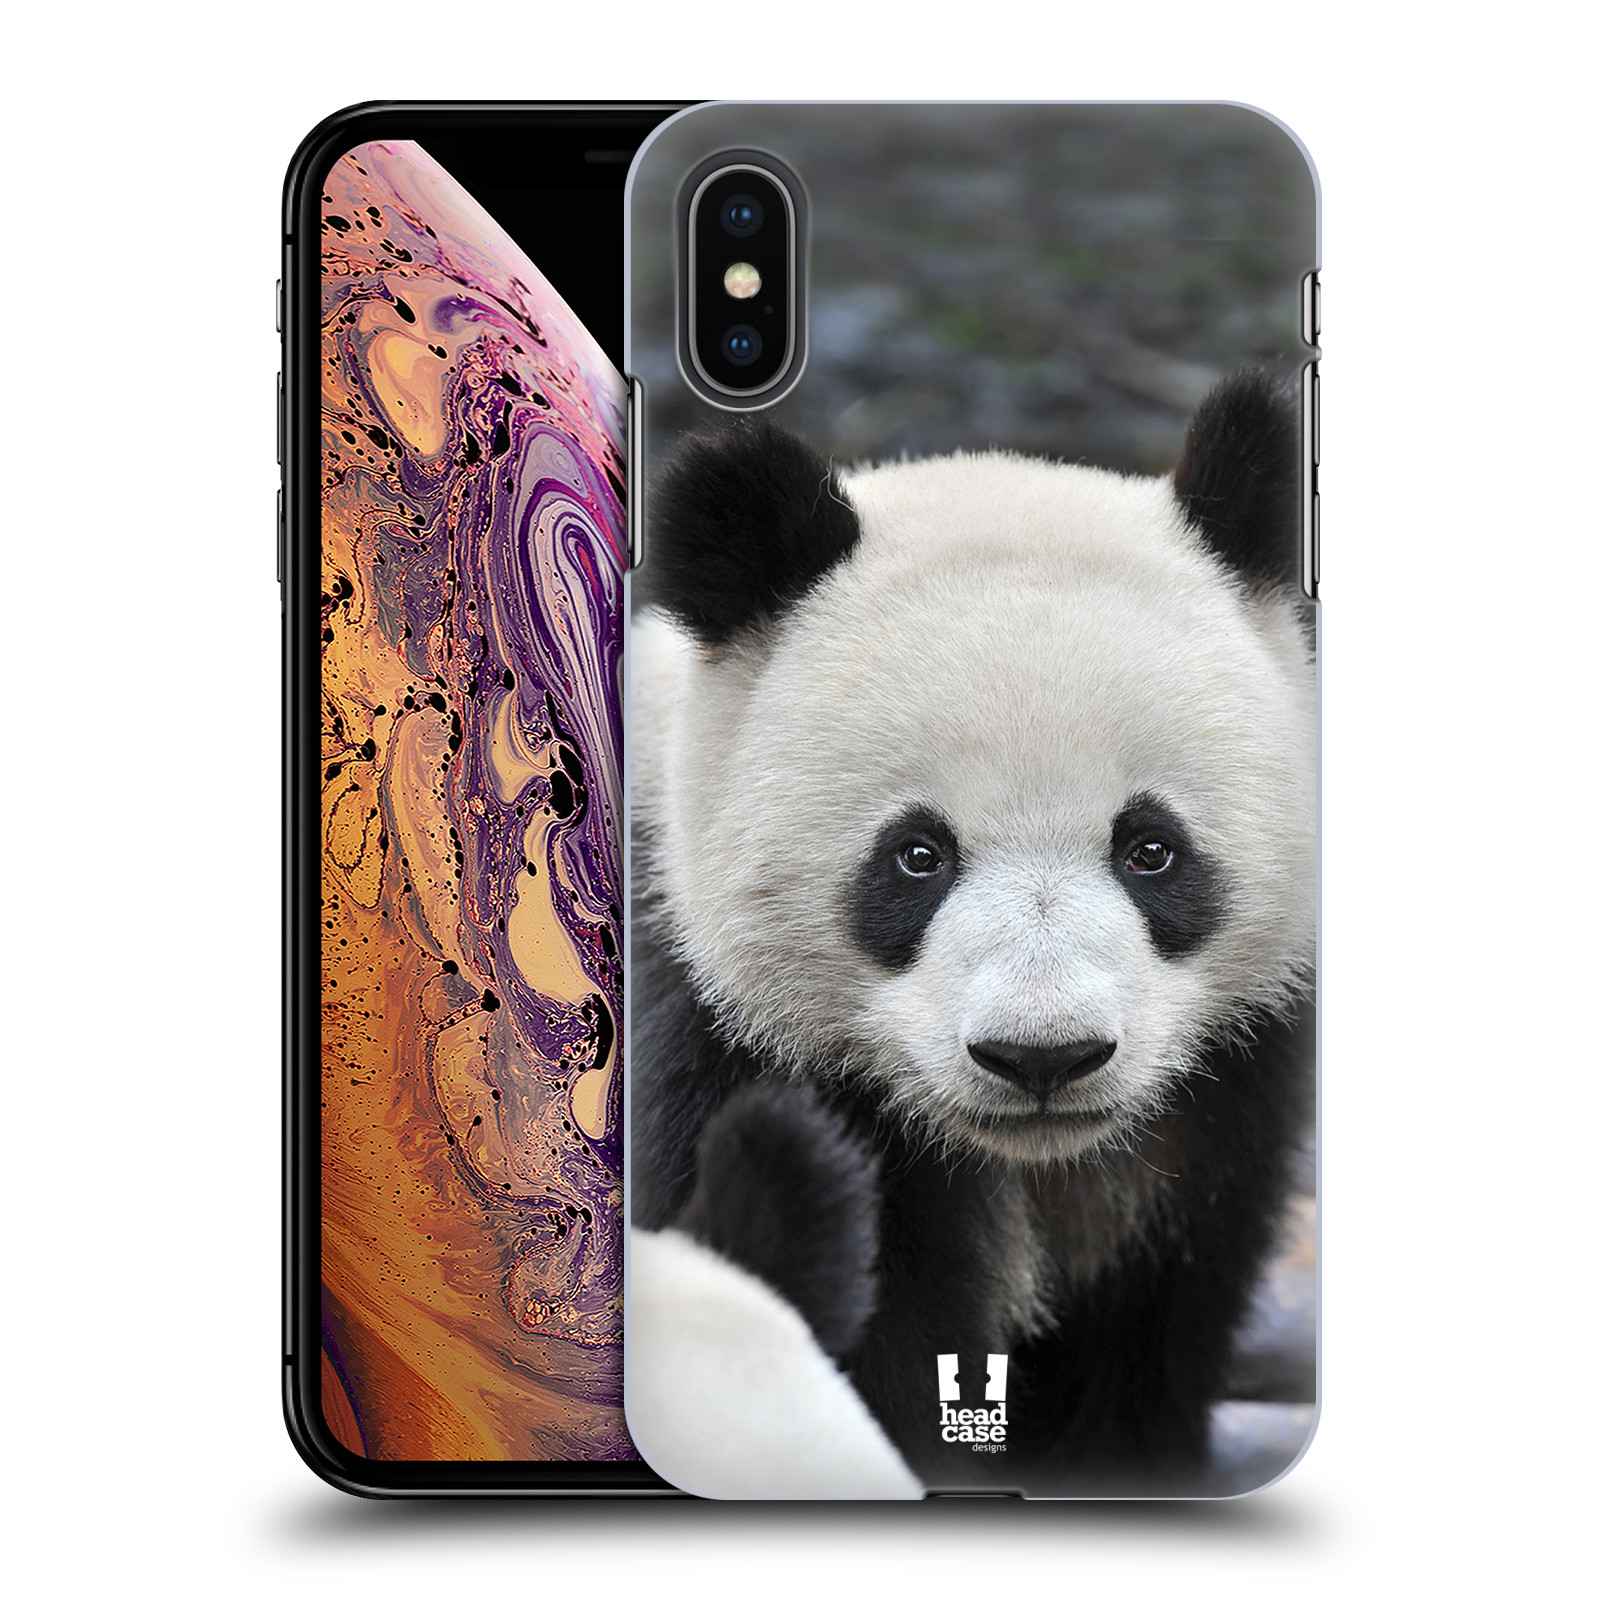 Zadní obal pro mobil Apple Iphone XS MAX - HEAD CASE - Svět zvířat medvěd panda